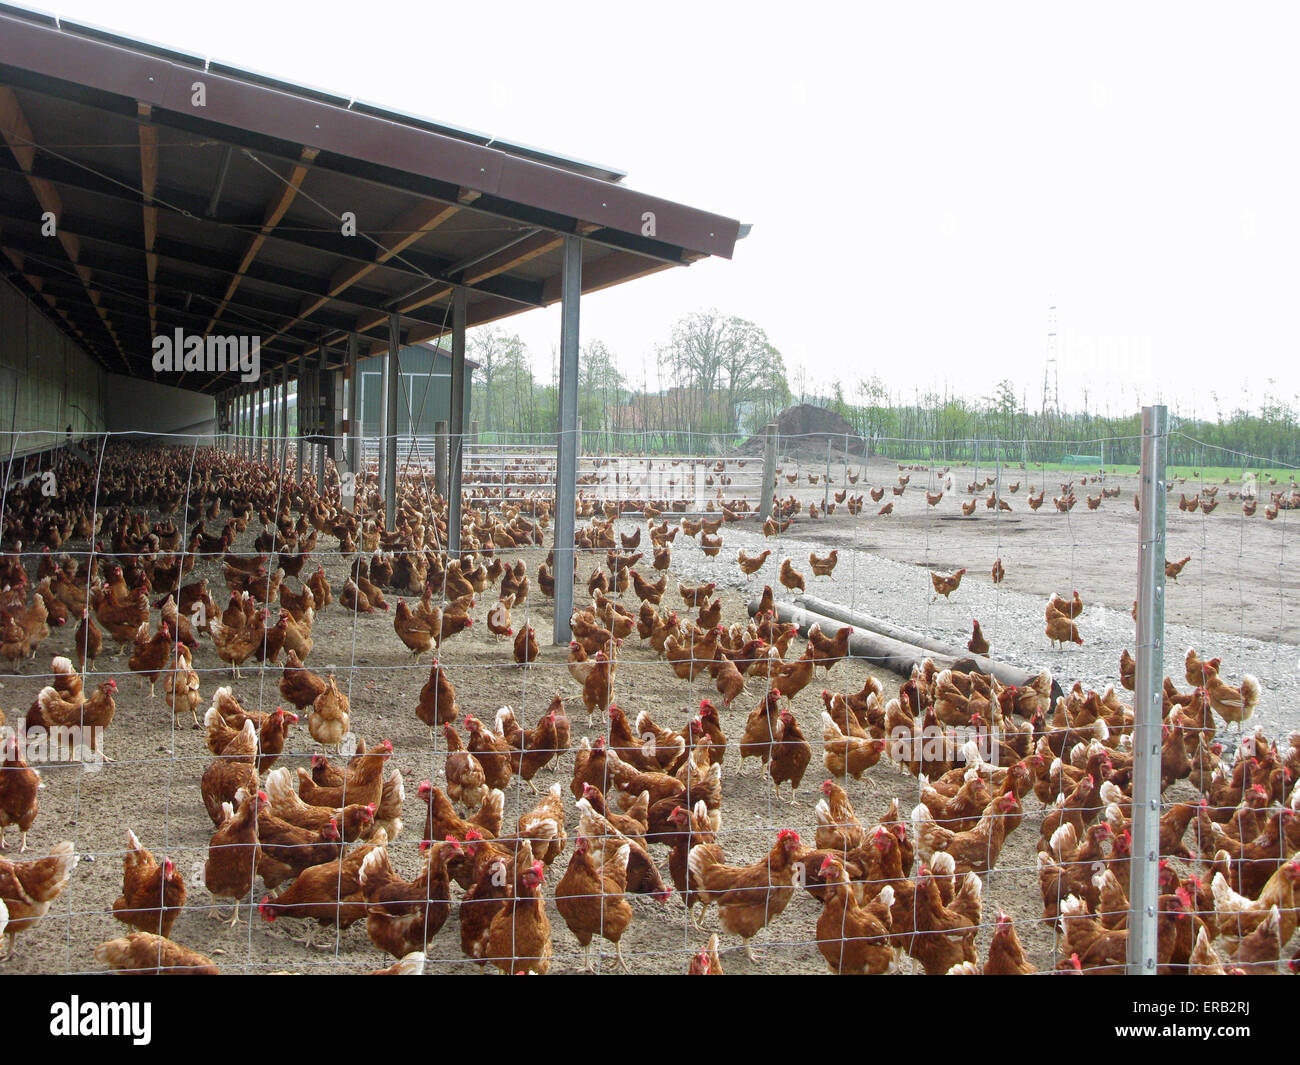 Free Range chicken moviéndose en un área más grande sin restricción Foto de stock